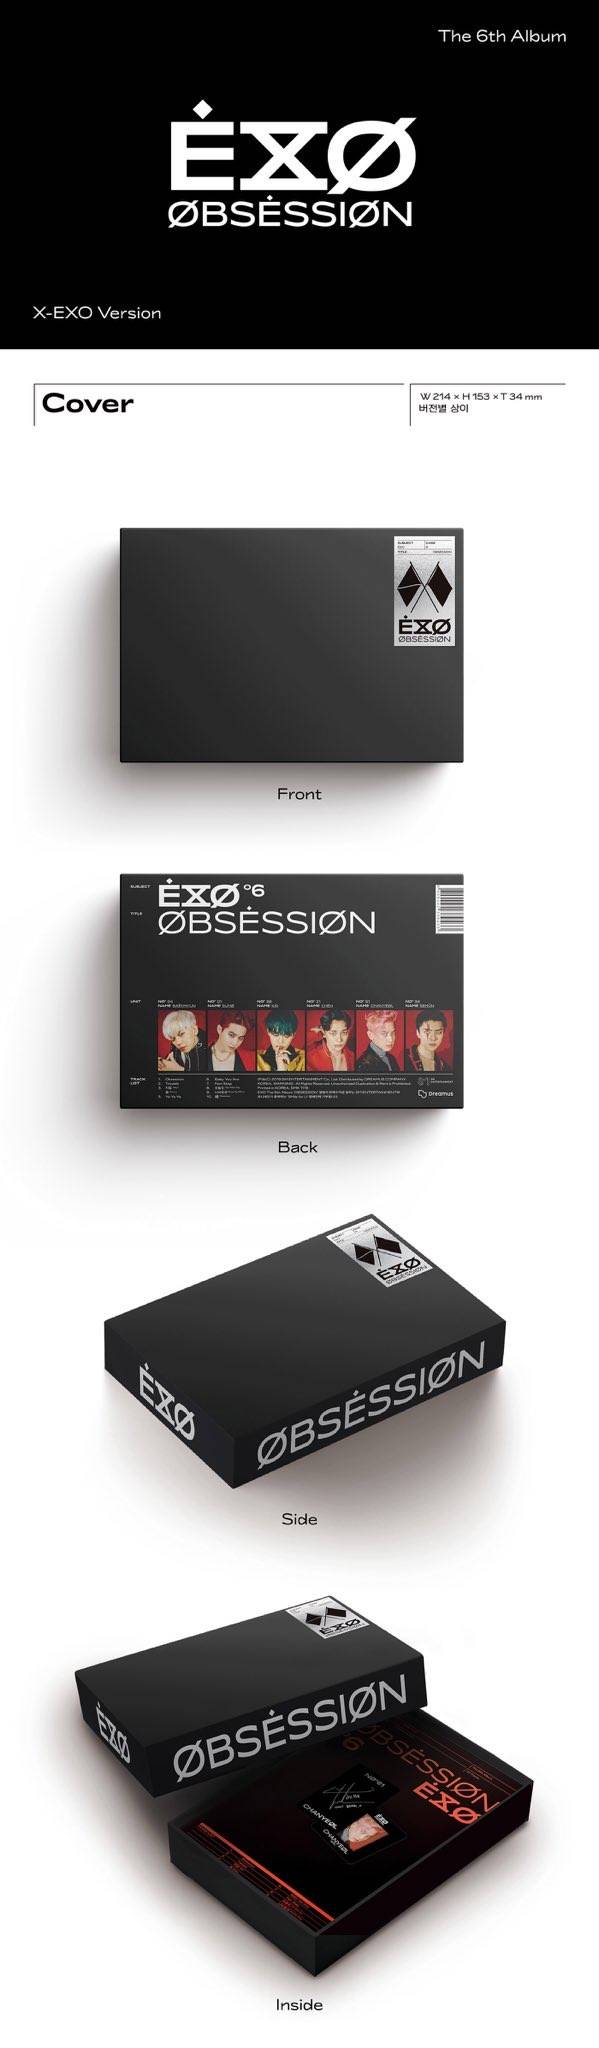 exo正规六辑《obsession》专辑配置出炉,居然搞出24张小卡!